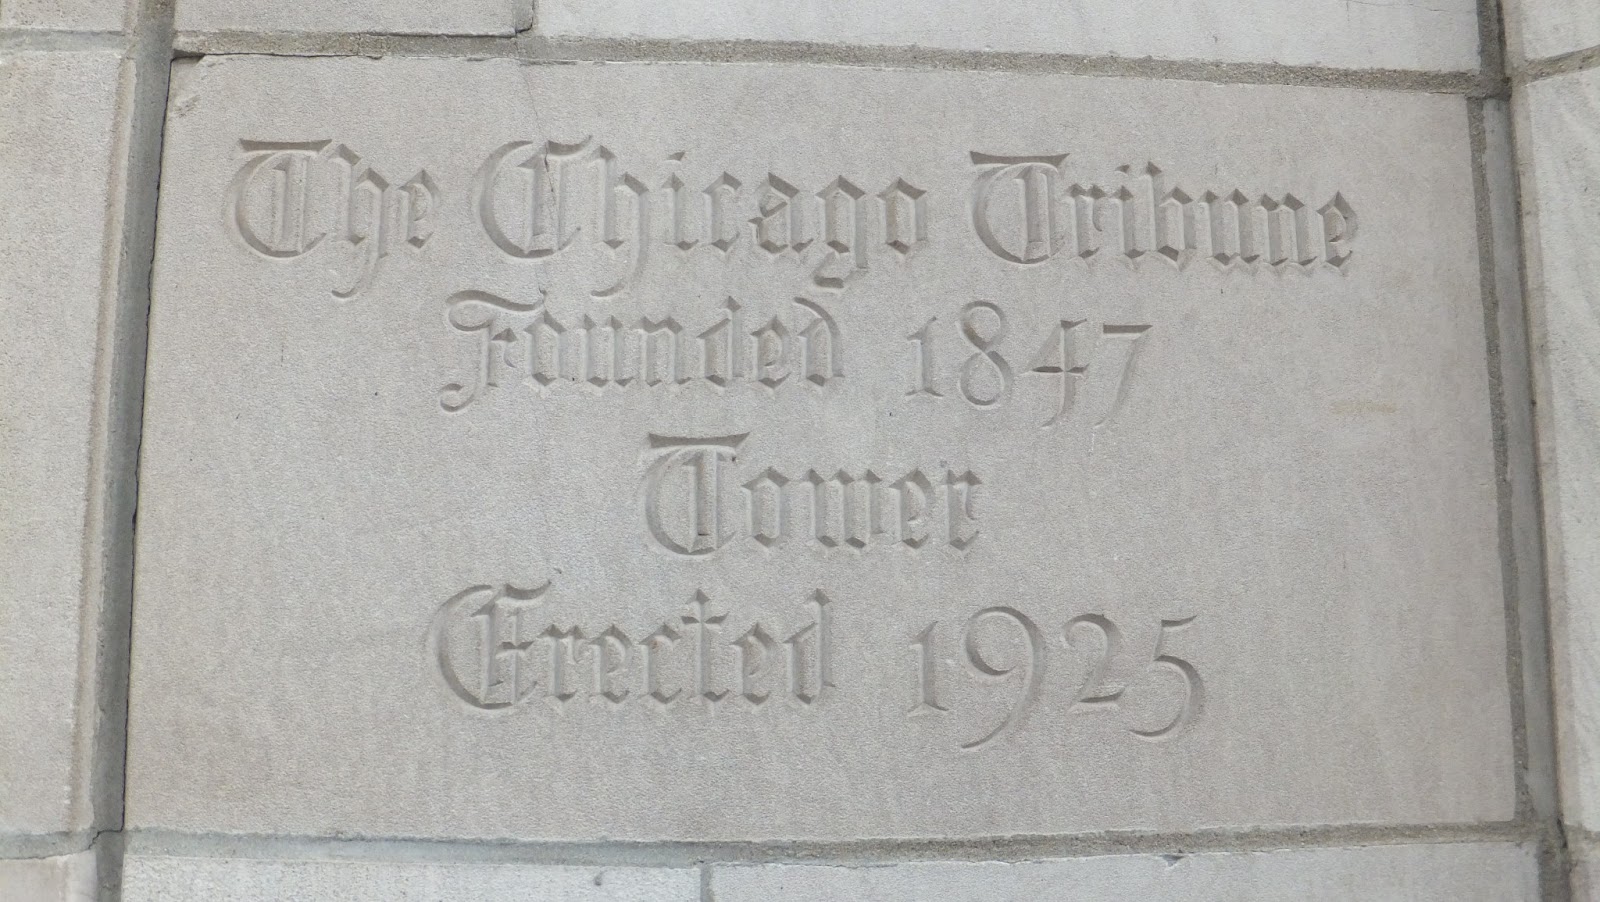  Chicago Tribune